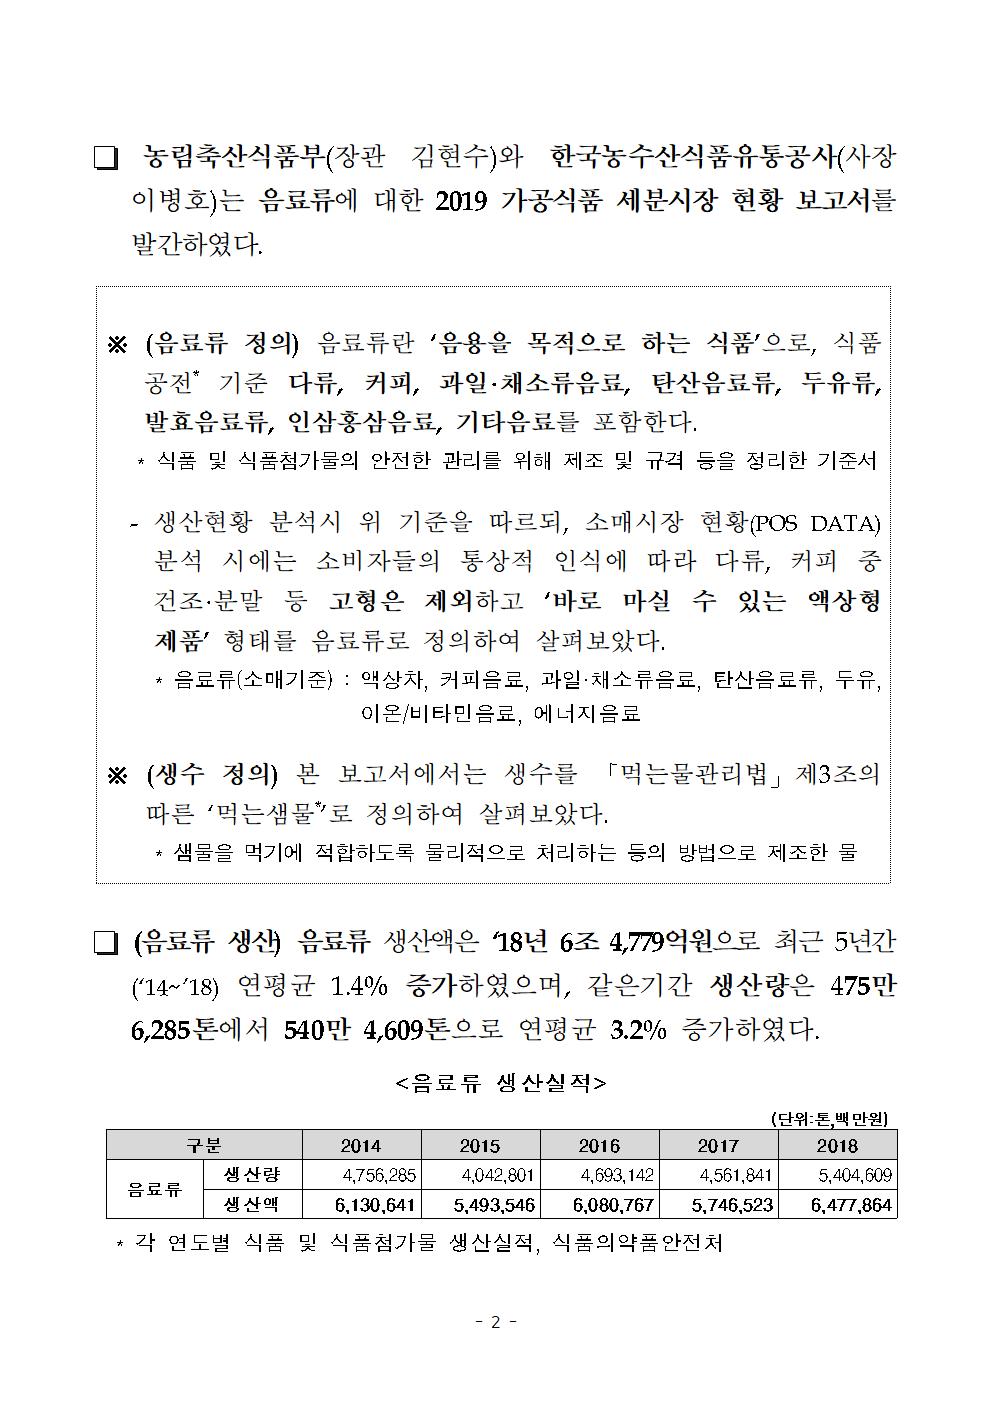 농림축산식품부(장관 김현수)와 한국농수산식품유통공사(사장 이병호)는 음료류에 대한 2019 가공식품 세분시장 현황 보고서를 발간하였다.